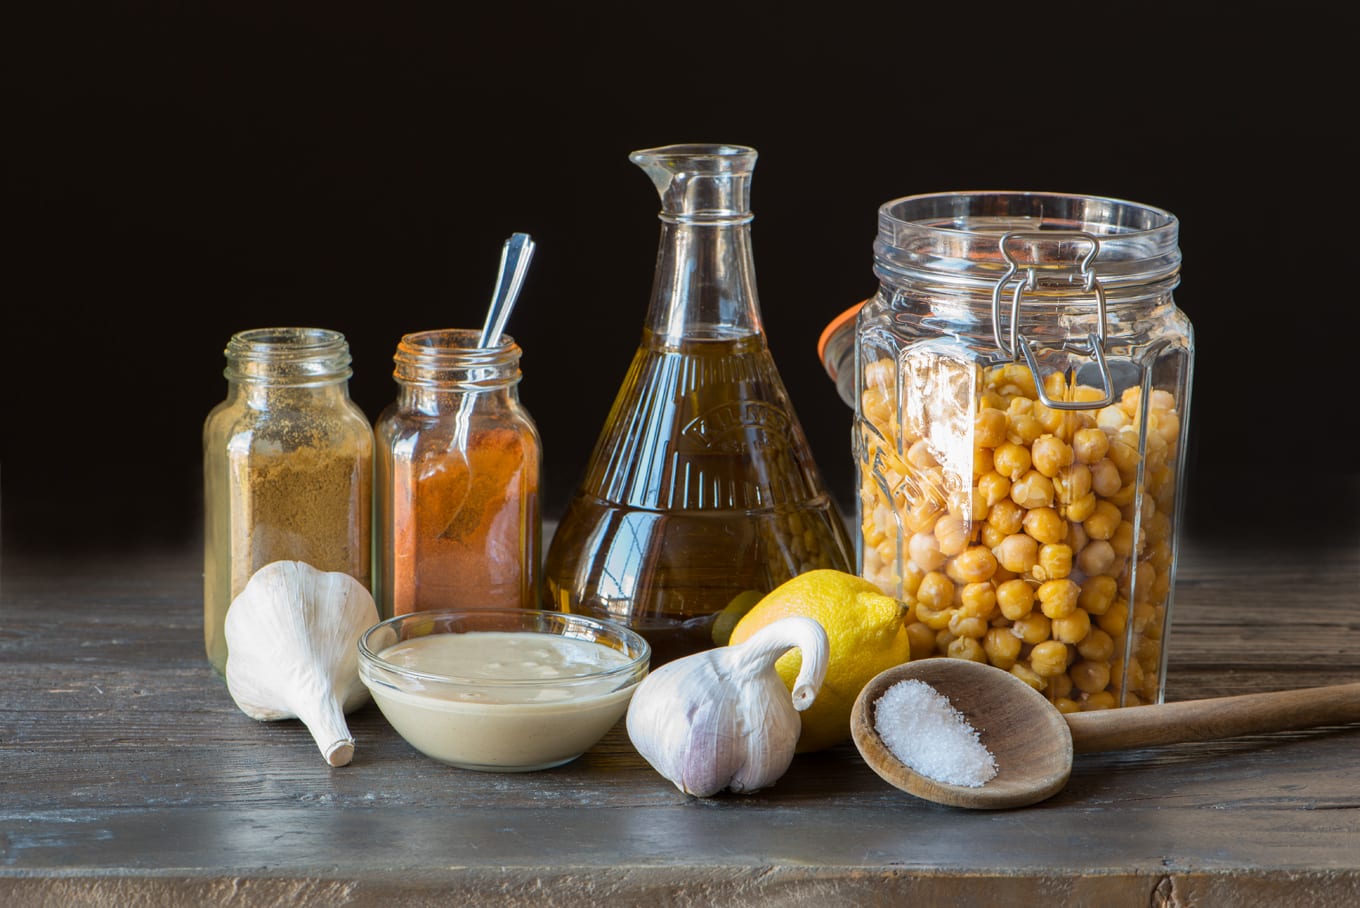 hummus ingredients in jars and bottles